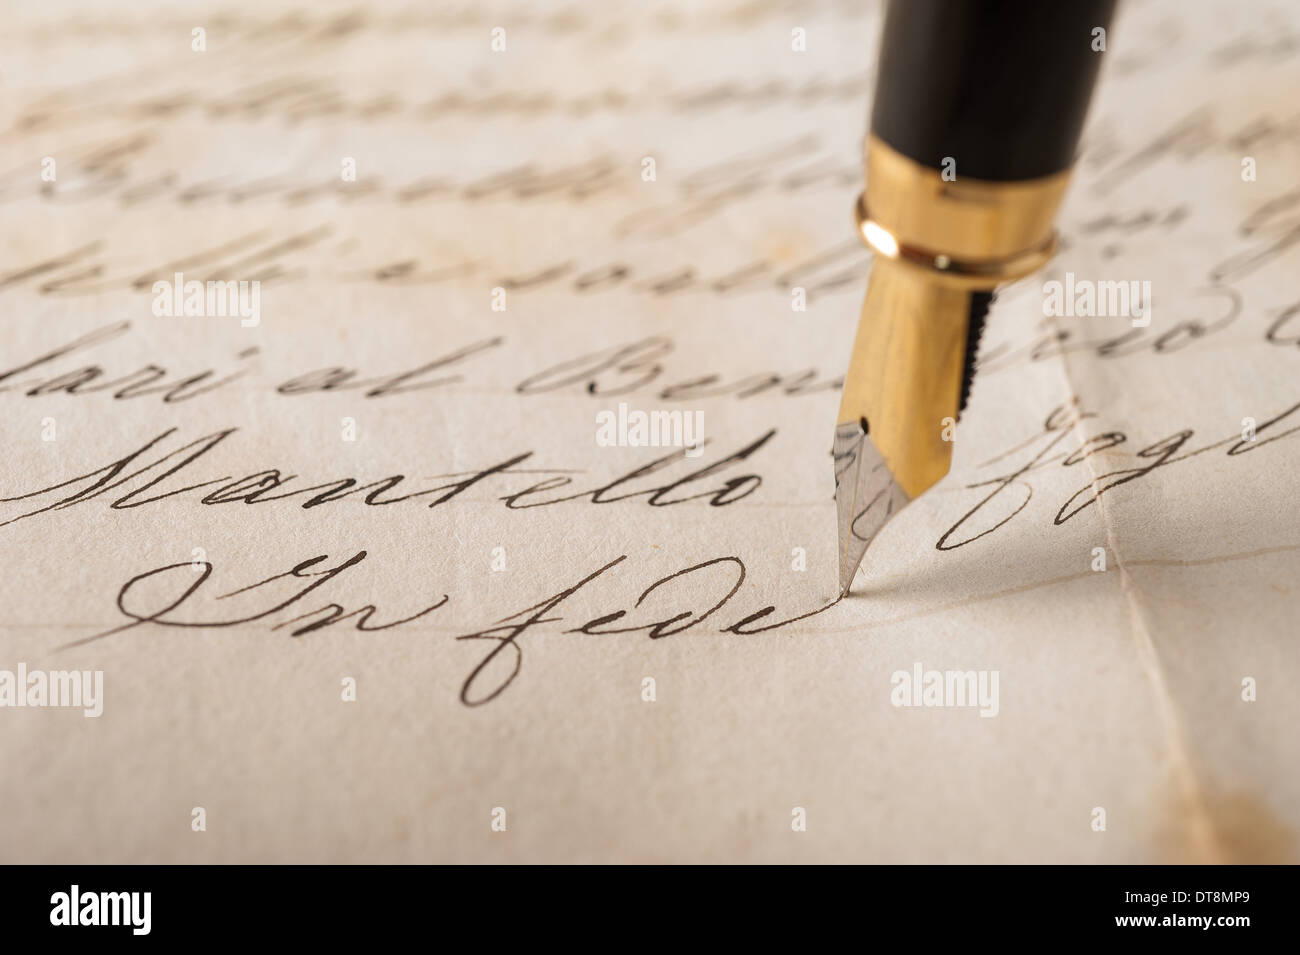 Stylo-plume écrit sur une vieille lettre manuscrite Banque D'Images